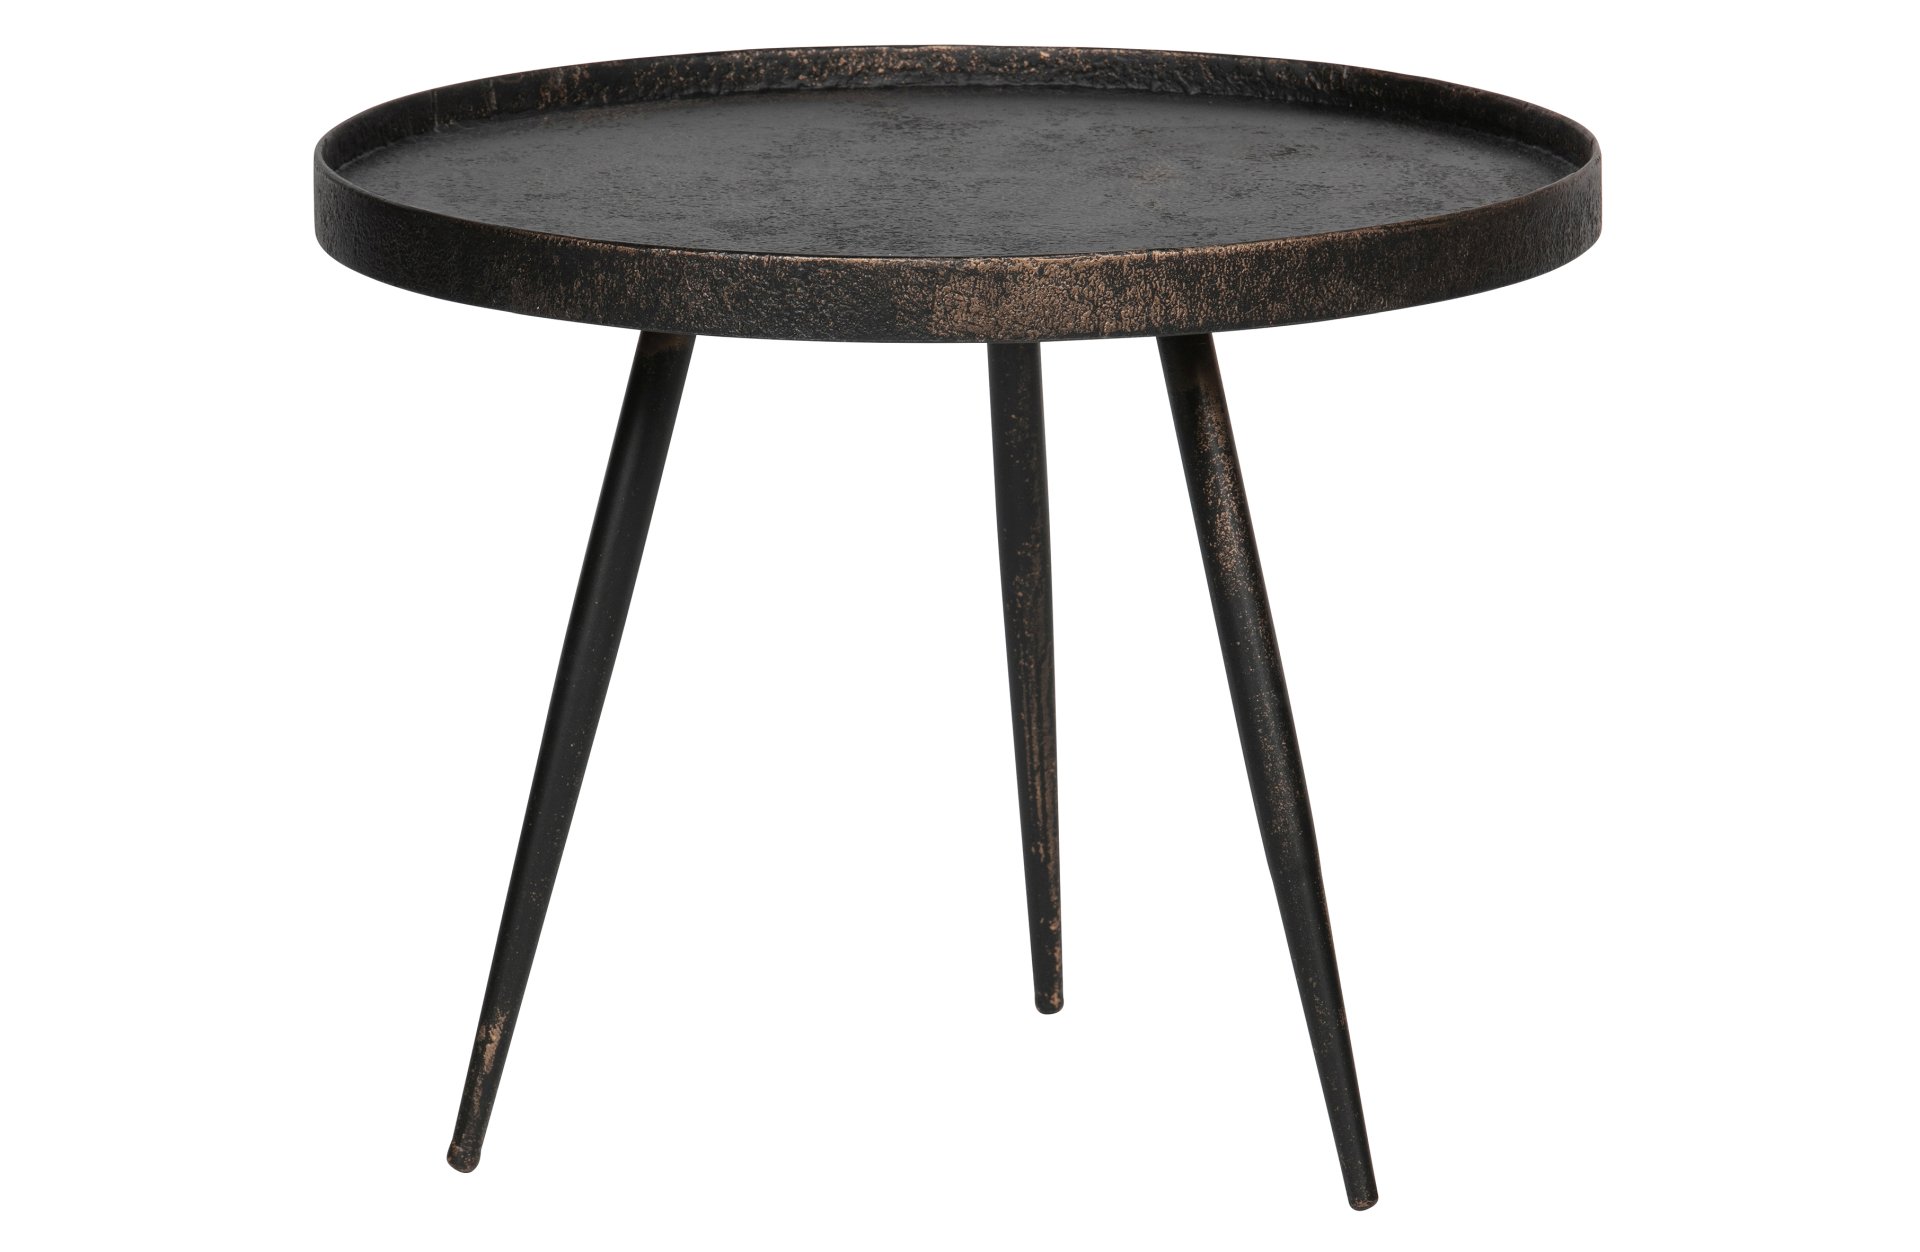 Der Beistelltisch Bounds überzeugt mit seinem industriellem Design. Gefertigt wurde der Tisch aus Metall und Holz. Der Tisch besitzt einen Anthrazit Farbton